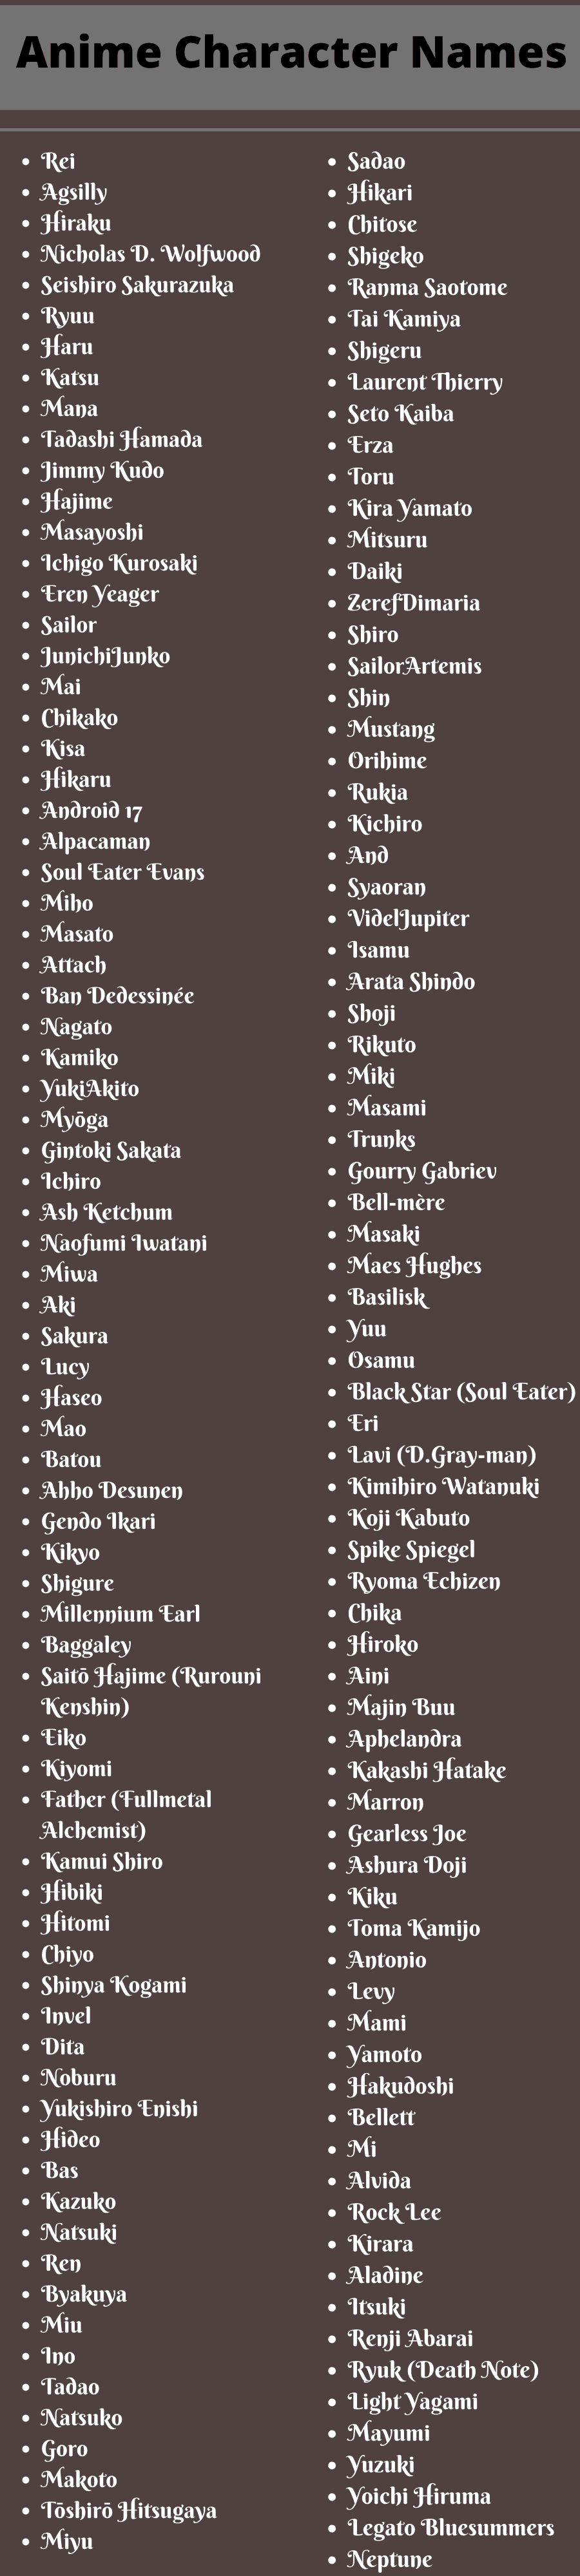 Anime Character Names: 400 Cool Anime Boys and Girls Names